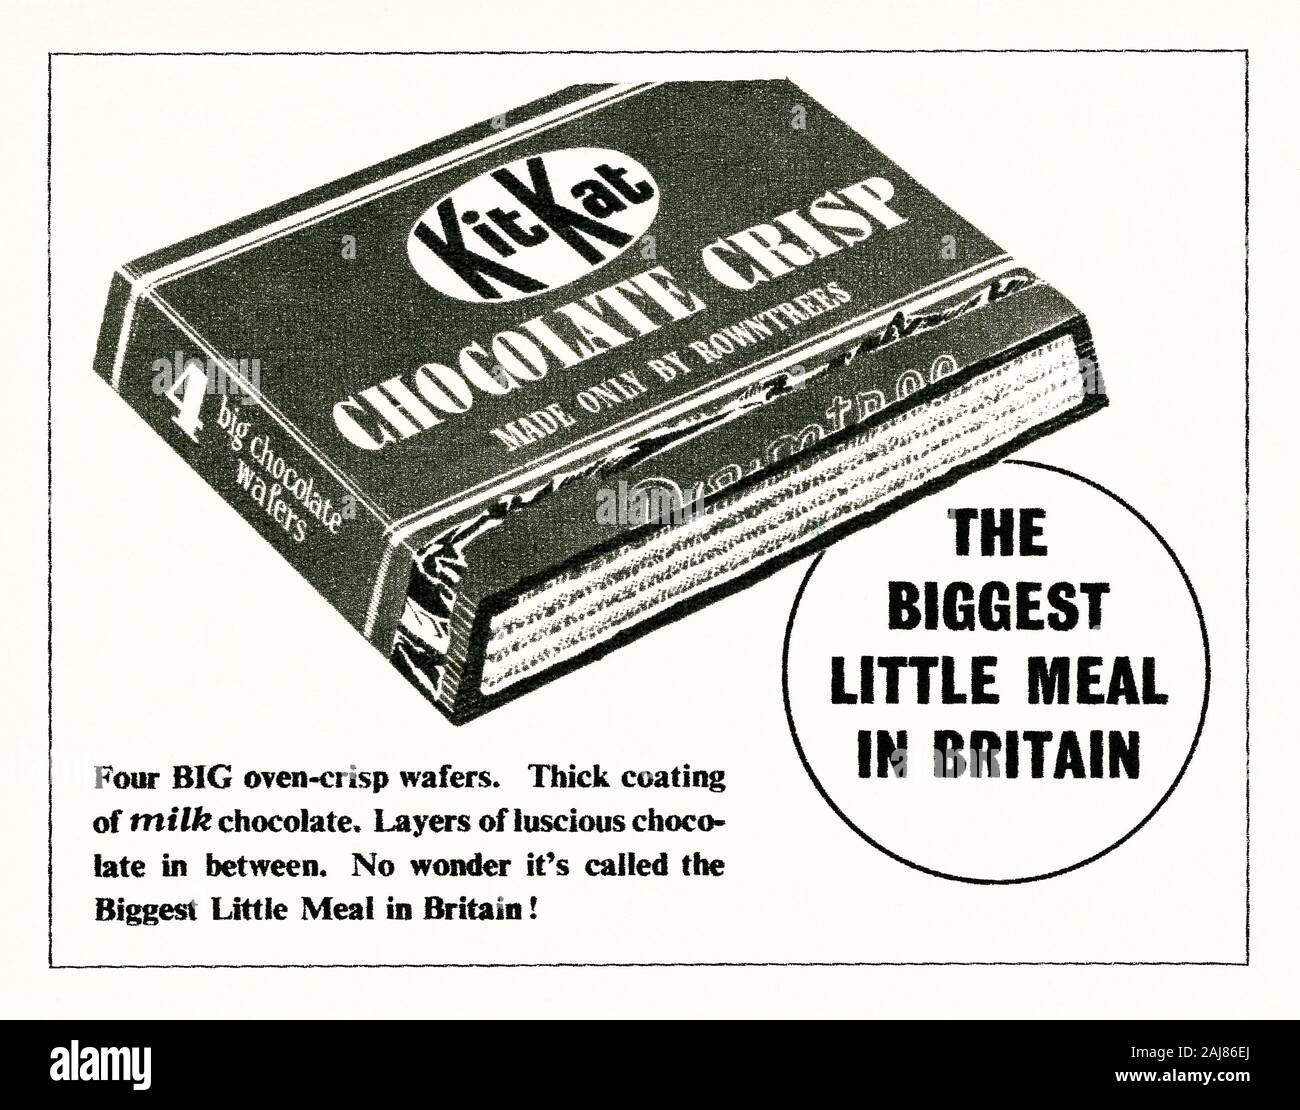 Eine Anzeige für ein Kit Kat Keks - es in einer Zeitschrift in Großbritannien im Jahr 1947 veröffentlicht wurde. Kit Kat ist ein mit Schokolade überzogene wafer Bar von Rowntree's von York, England, UK. Die ursprüngliche Version der Bar war nach einem Arbeiter an schlugen die York Rowntree ist ein Snack, der ein Bin ein in seinem Lunchpaket für Arbeit" entwickelt haben könnte. Sie wurde 1935 als Rowntree's Schokolade Crisp gestartet. Es war Kit Kat Schokolade Crisp 1937 umbenannt. Seine catchphrase nach dem Zweiten Weltkrieg (wie hier gezeigt) war die "Die größte kleine Mahlzeit in Britain". Seit 1957 der legendären Slogan für Los wurde" Machen Sie mal Pause... haben ein Kit Kat". Stockfoto